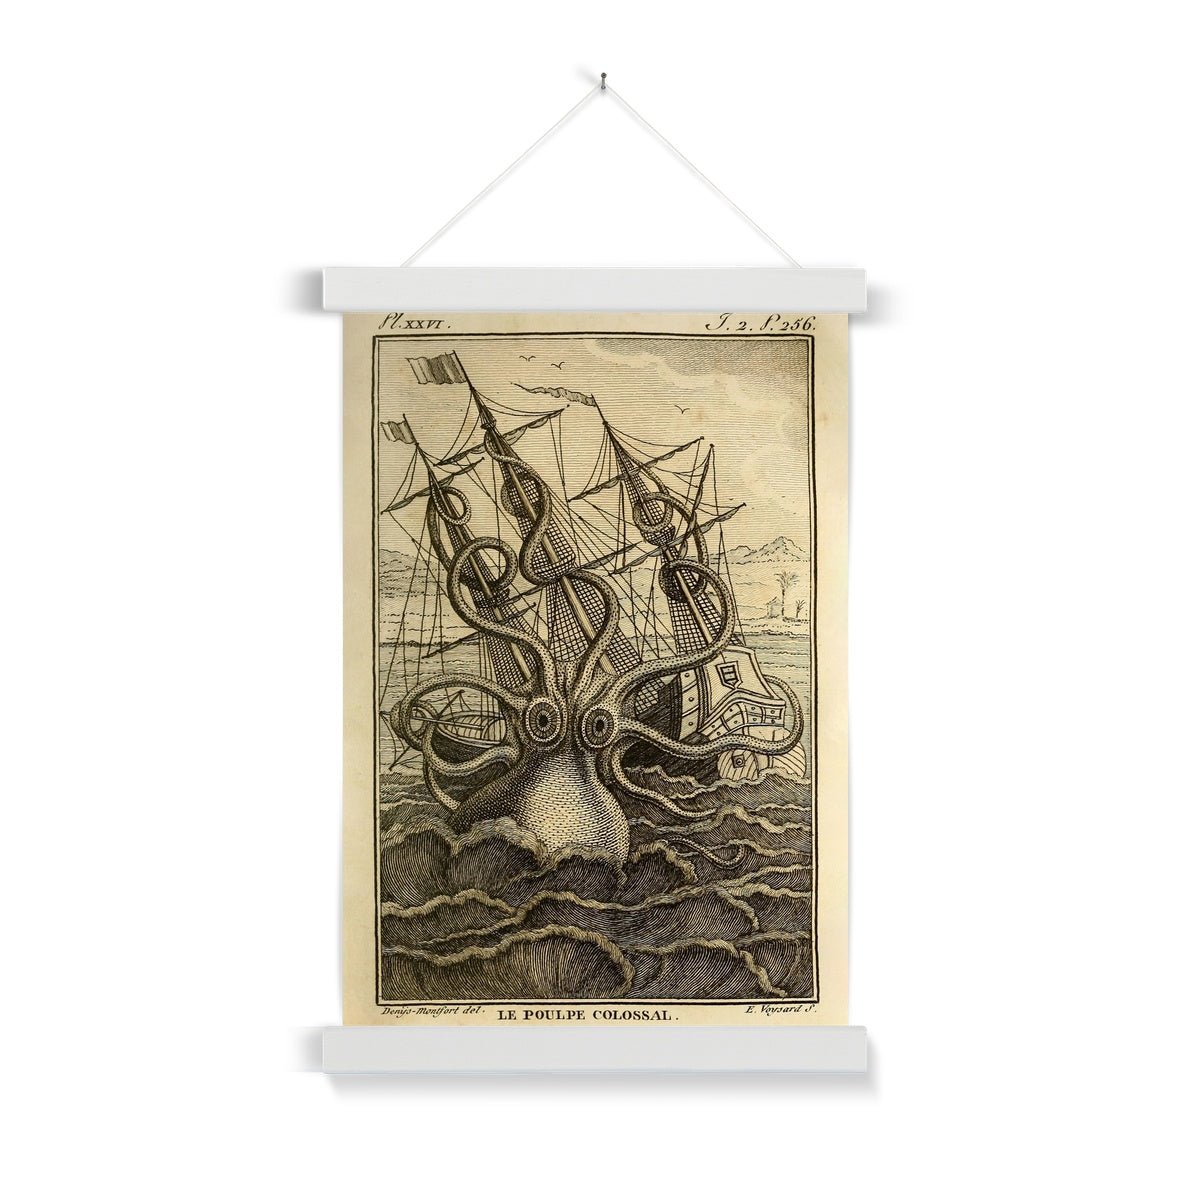 Fine art A4 Portrait / White Frame Kraken Attacking Schooner | Loki's Sea Monster | Norse Mytholoy | Gift for Him | Fine Art Print with Hanger